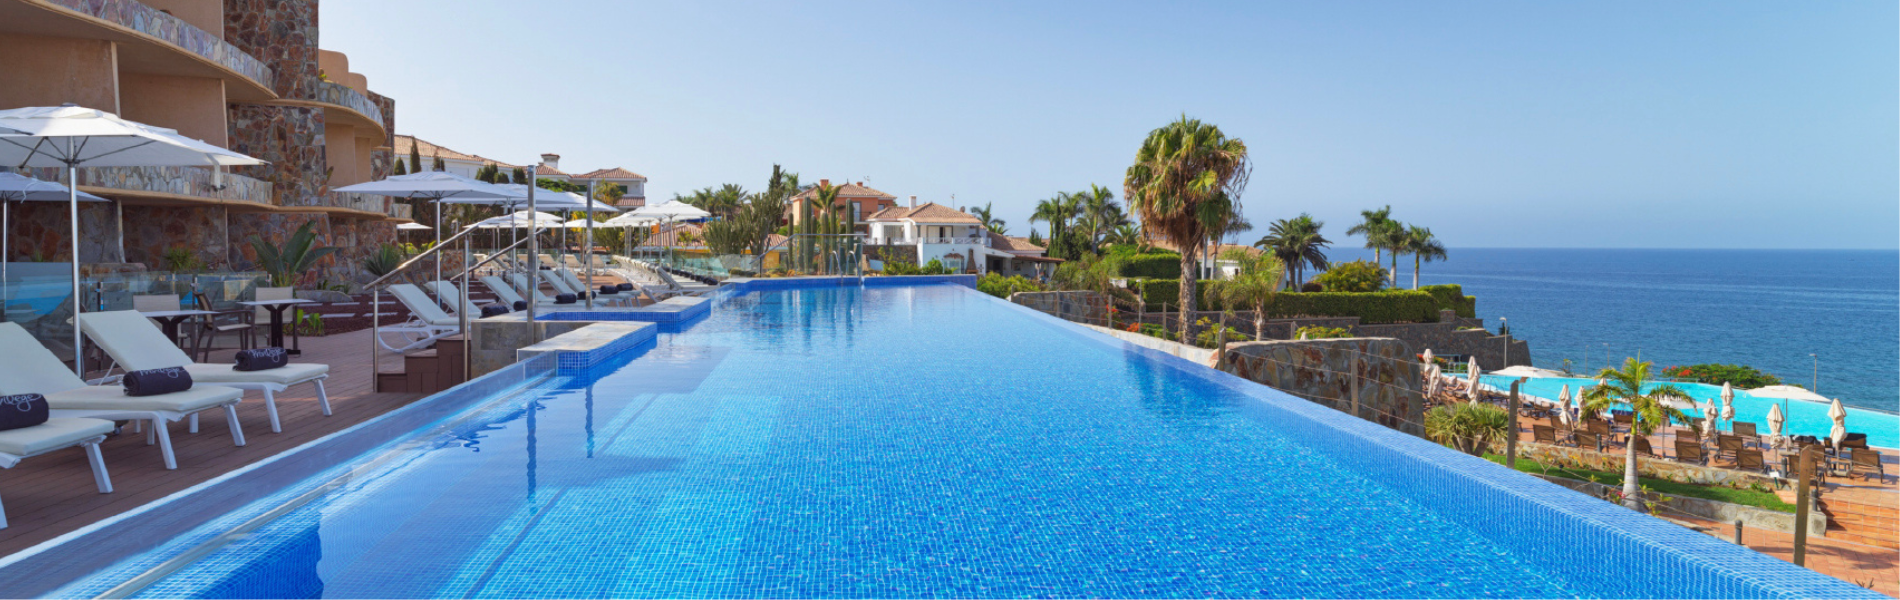 Disfruta de una experiencia y duplica tus puntos en el H10 Playa Meloneras Palace, situado en el sur de Gran Canaria.